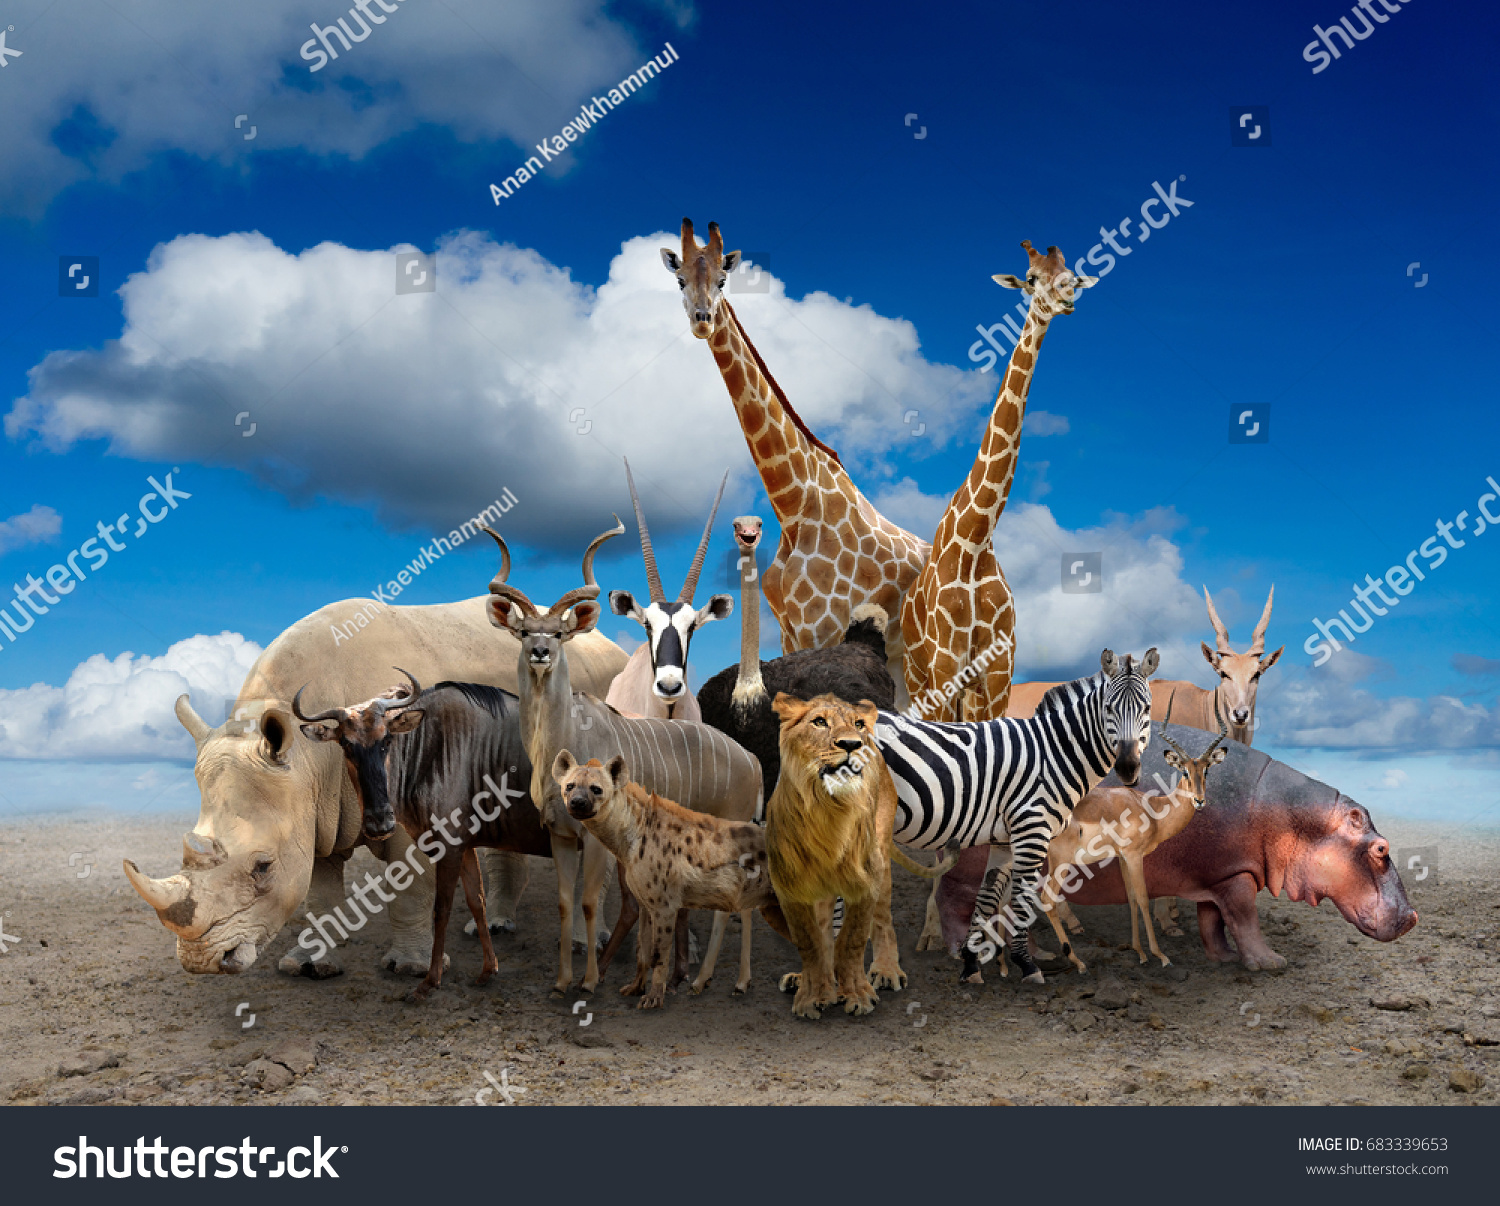 地面に立つアフリカの動物の群れ の写真素材 今すぐ編集